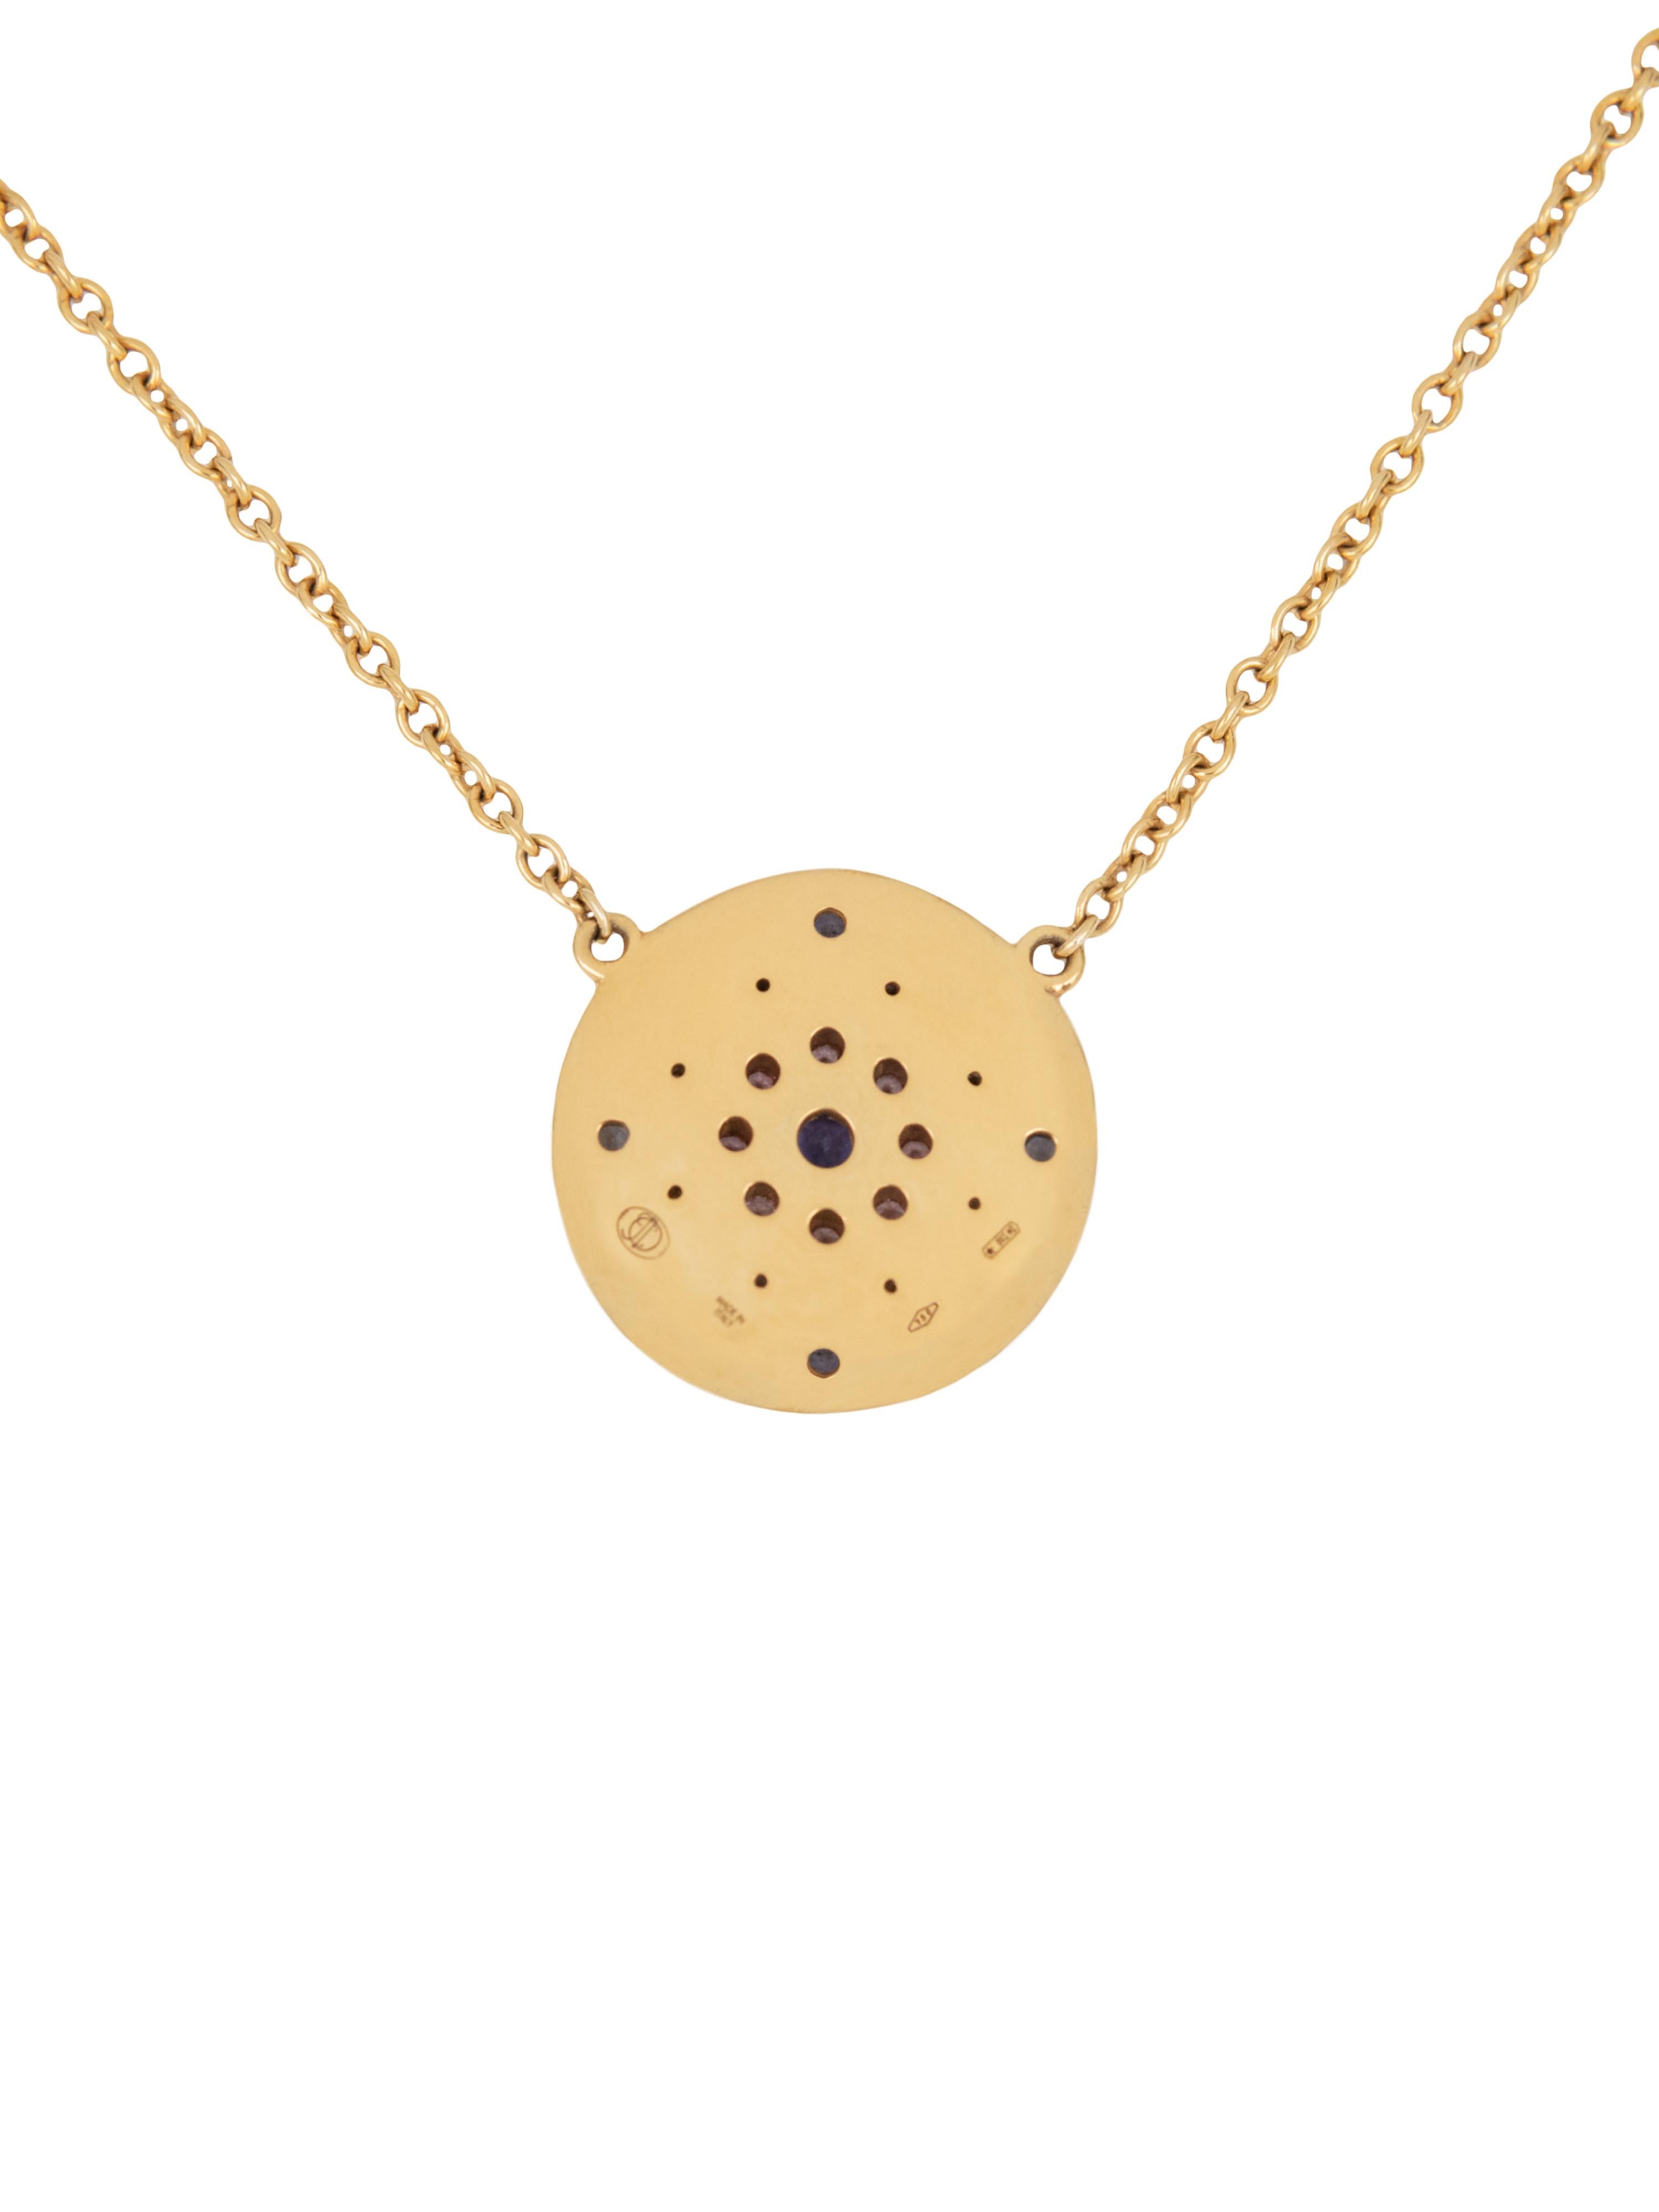 Julia-Didon Cayre 18 Karat Yellow Gold Diamond and Sapphire Chain Necklace (Zeitgenössisch)